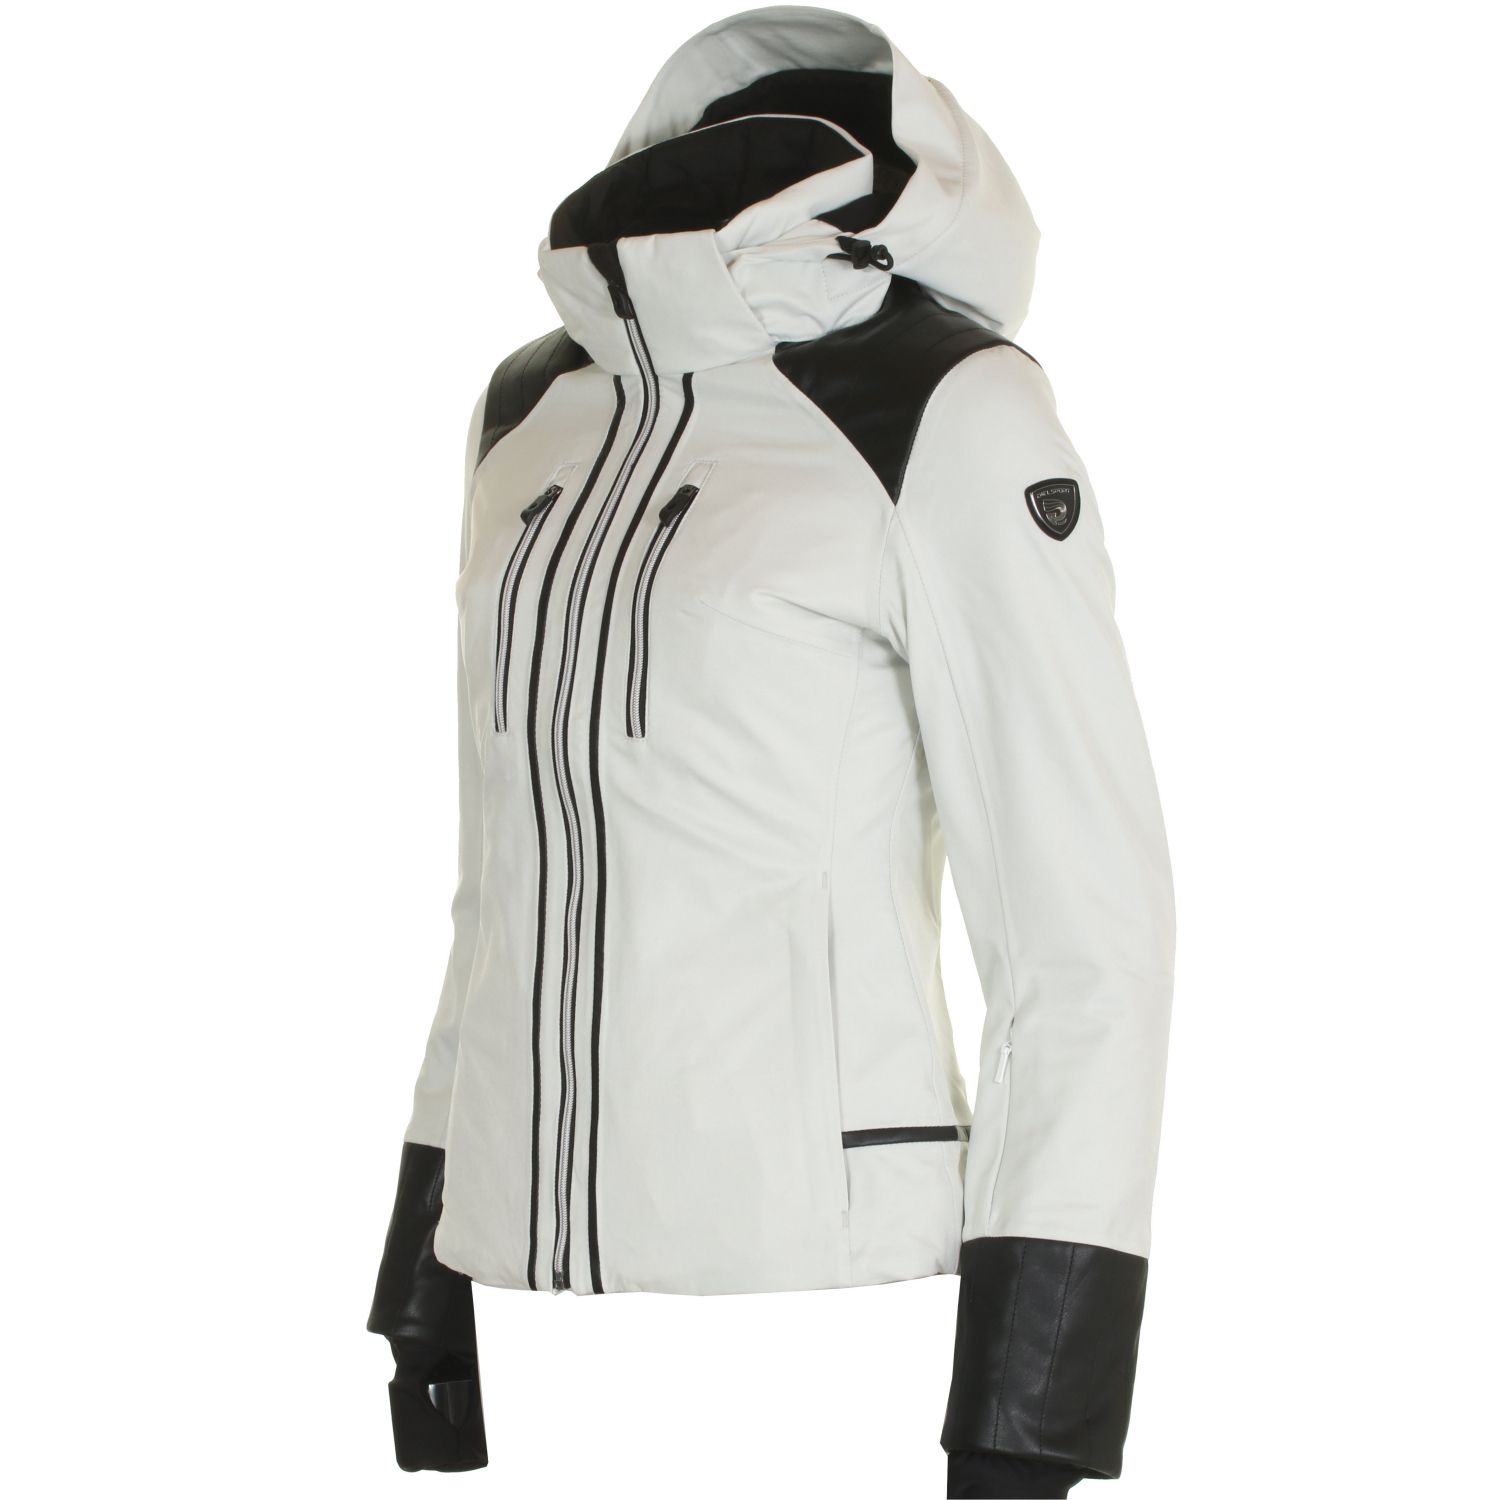 DIEL Farida, ski jacket, women, off white